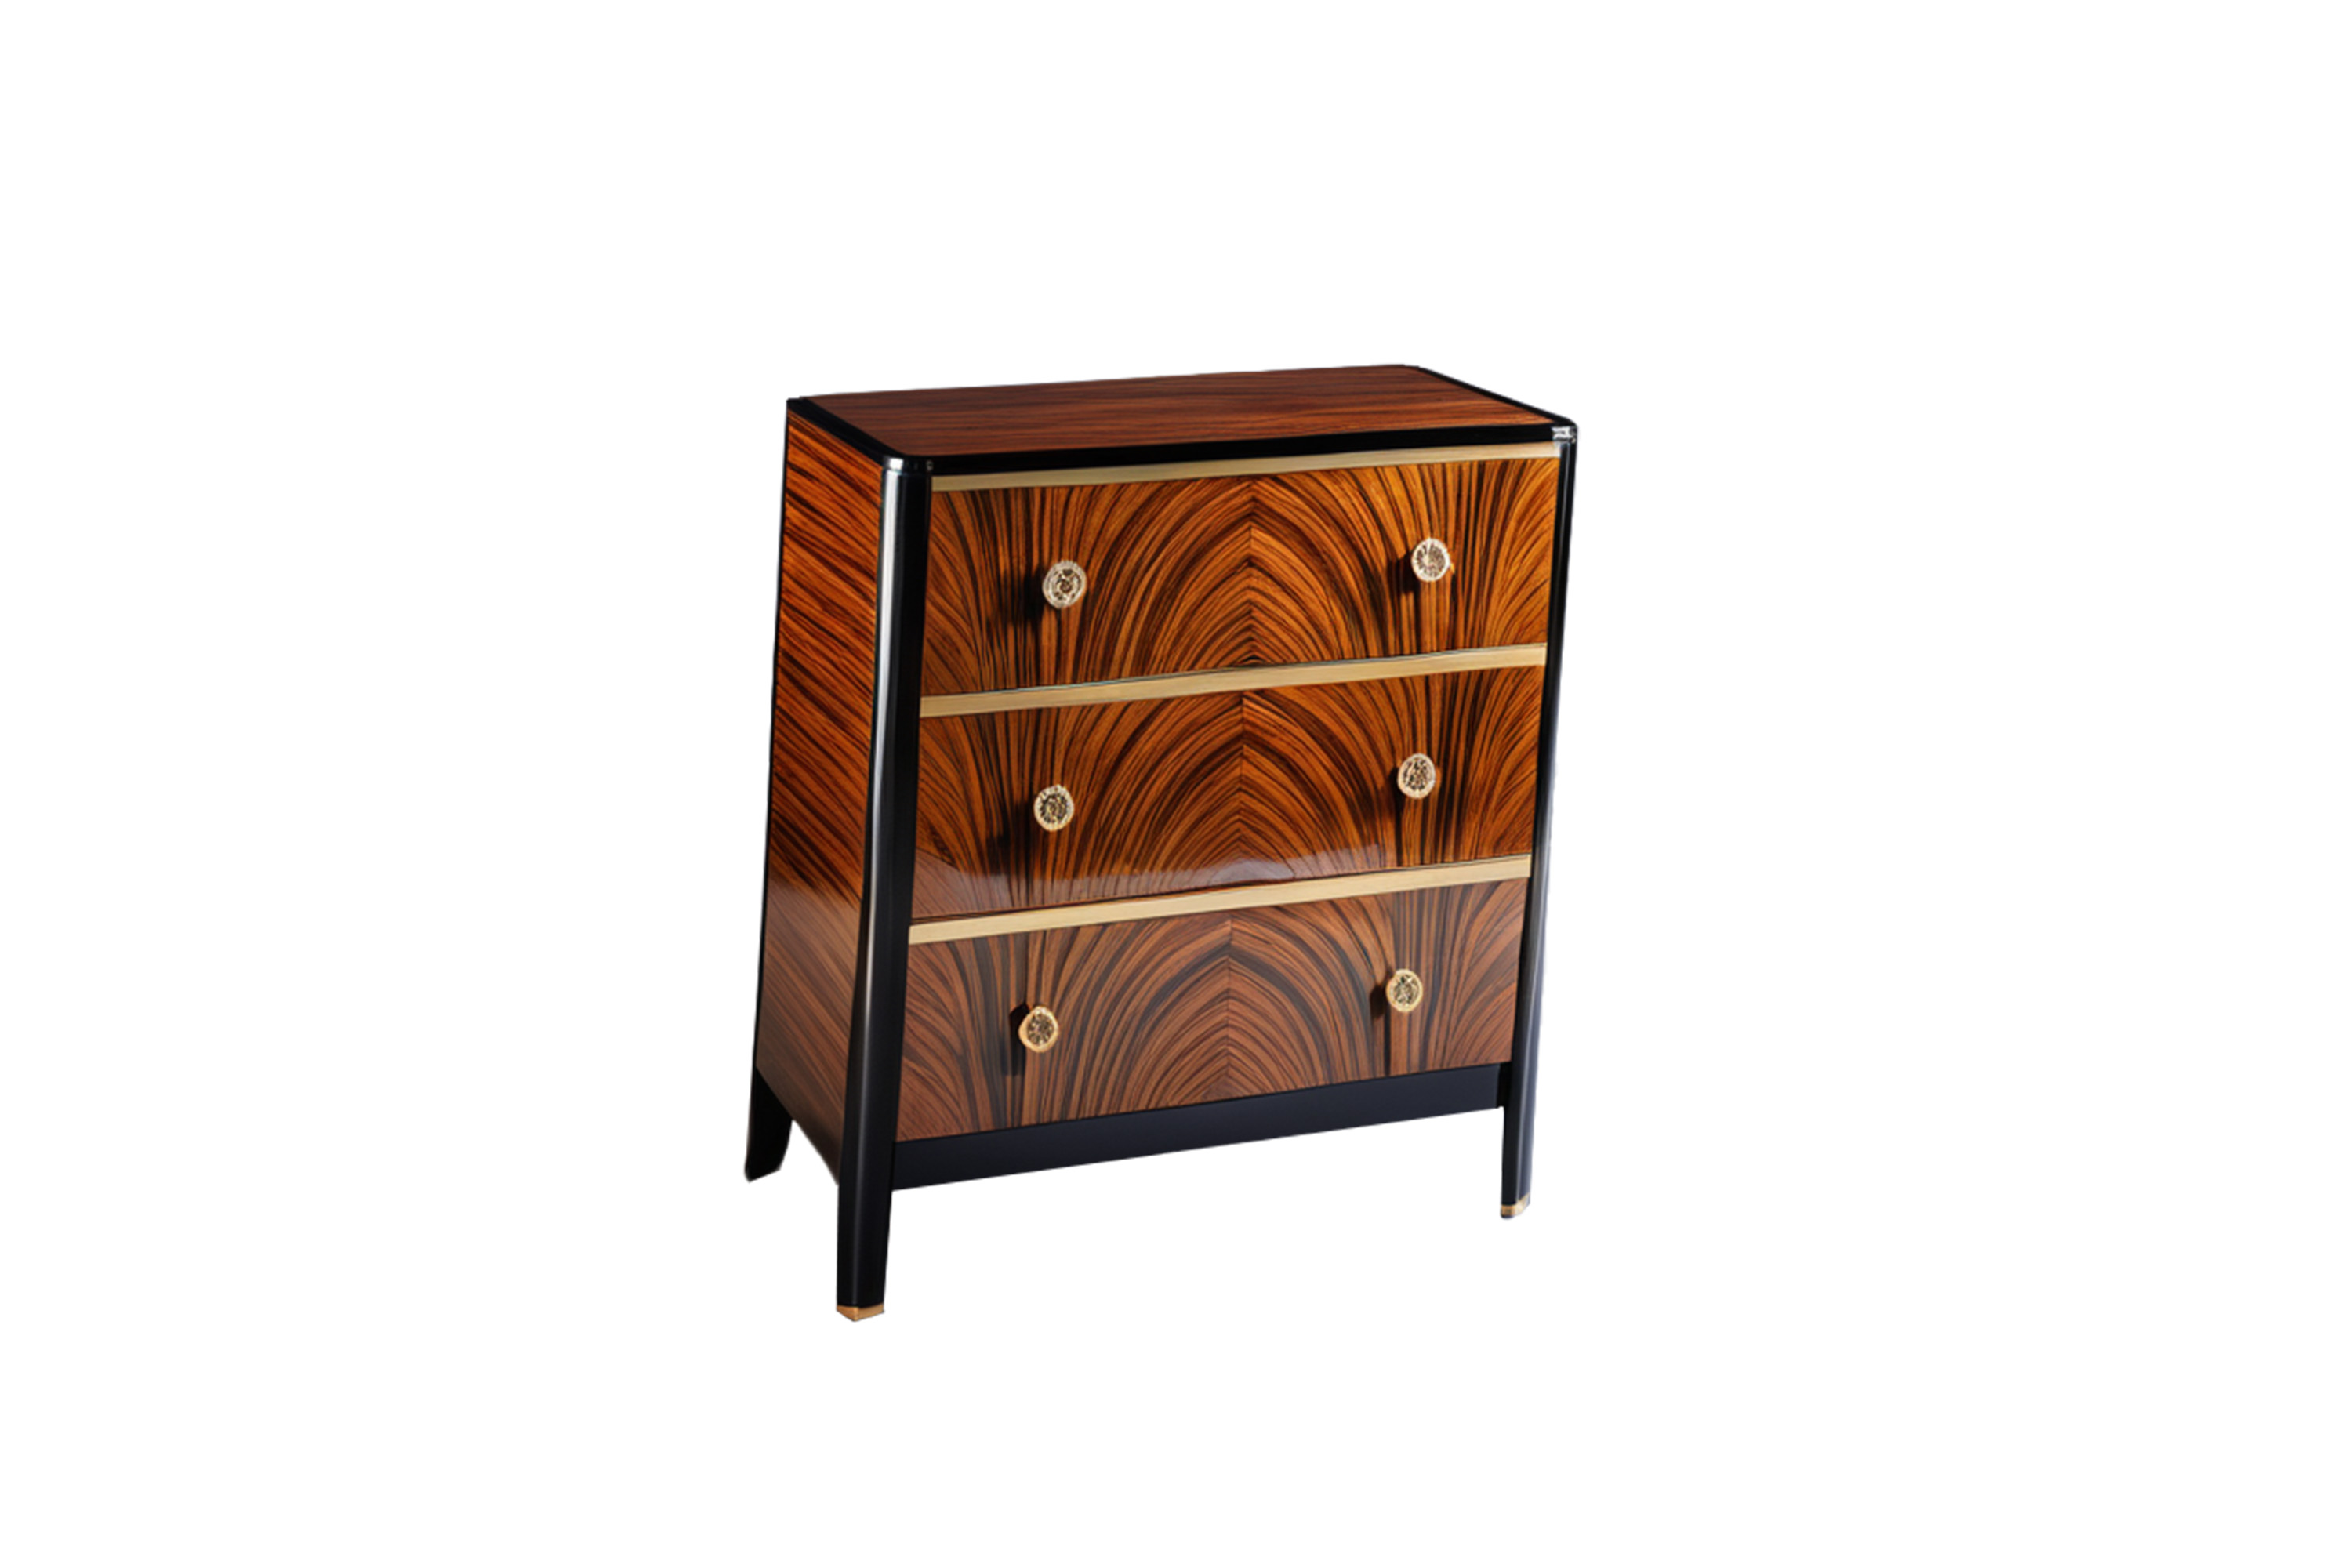 Art Deco chest of drawers with beautiful Macassar veneer